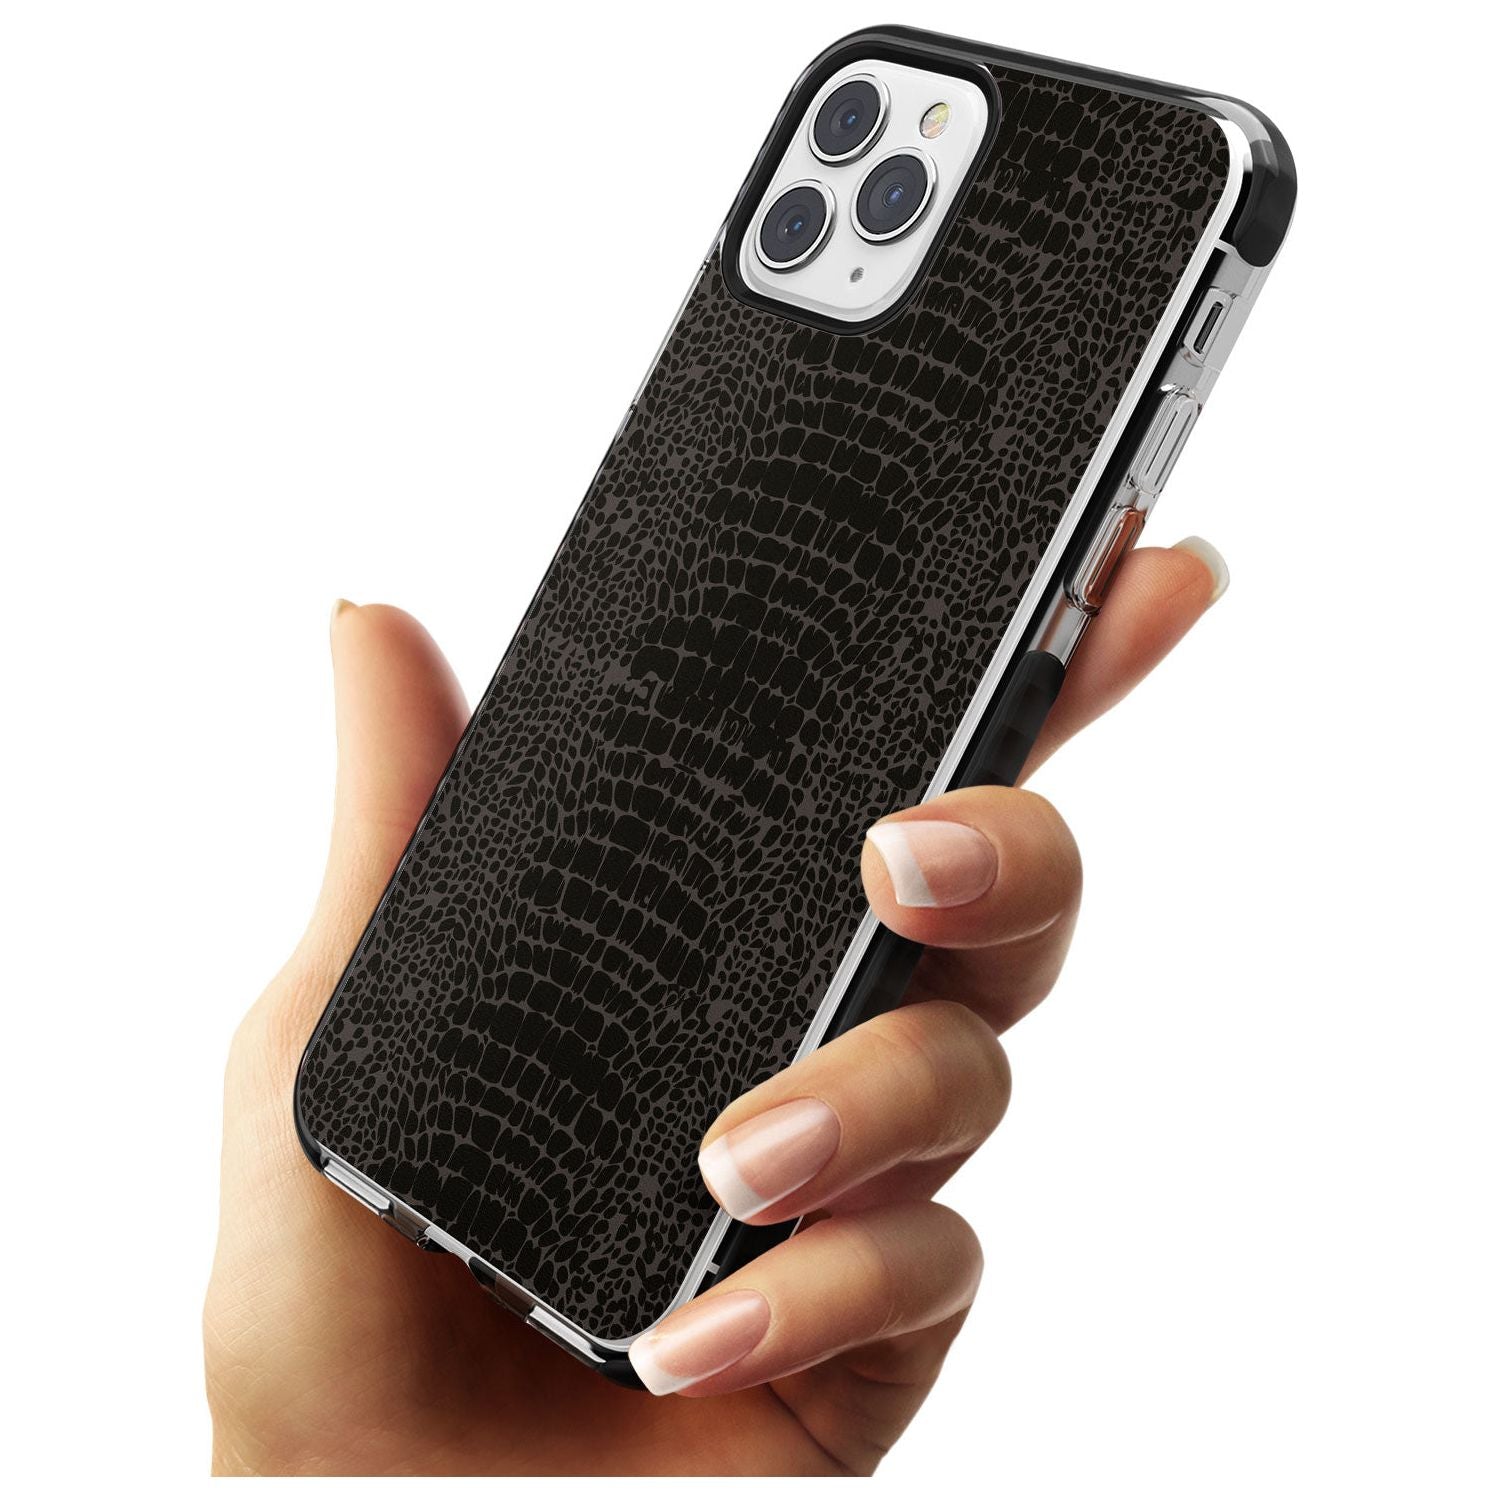 Dark Animal Print Pattern Snake Skin Black Impact Phone Case for iPhone 11 Pro Max